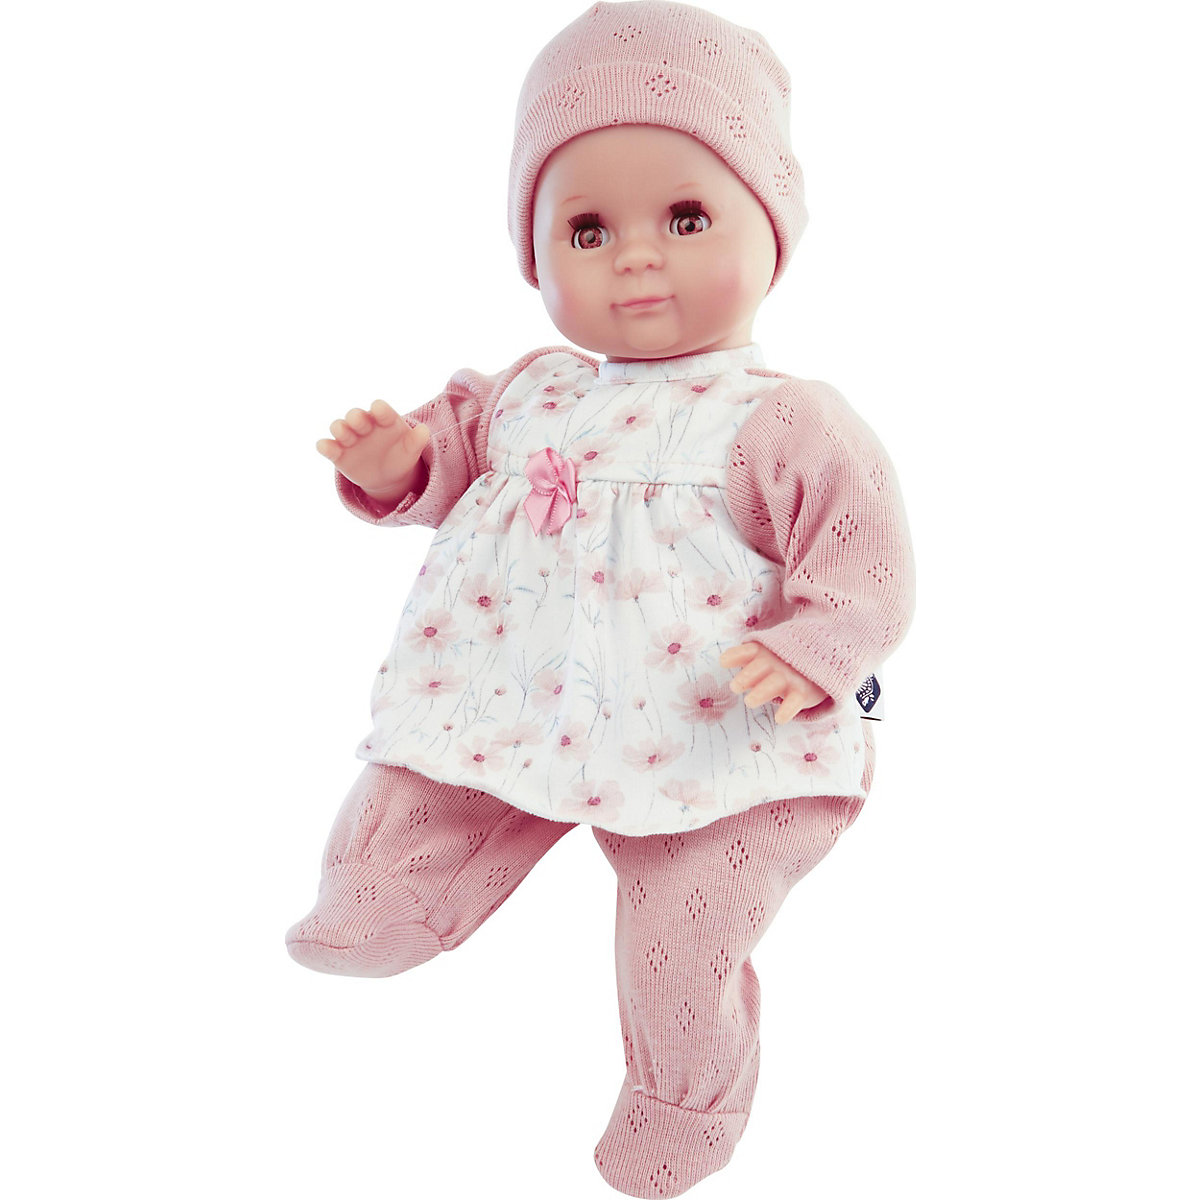 Schildkröt Puppe Schlummerle Gr. 32 cm (Mal Haar braune Schlafaugen Baby Puppe inkl. Kleidung)